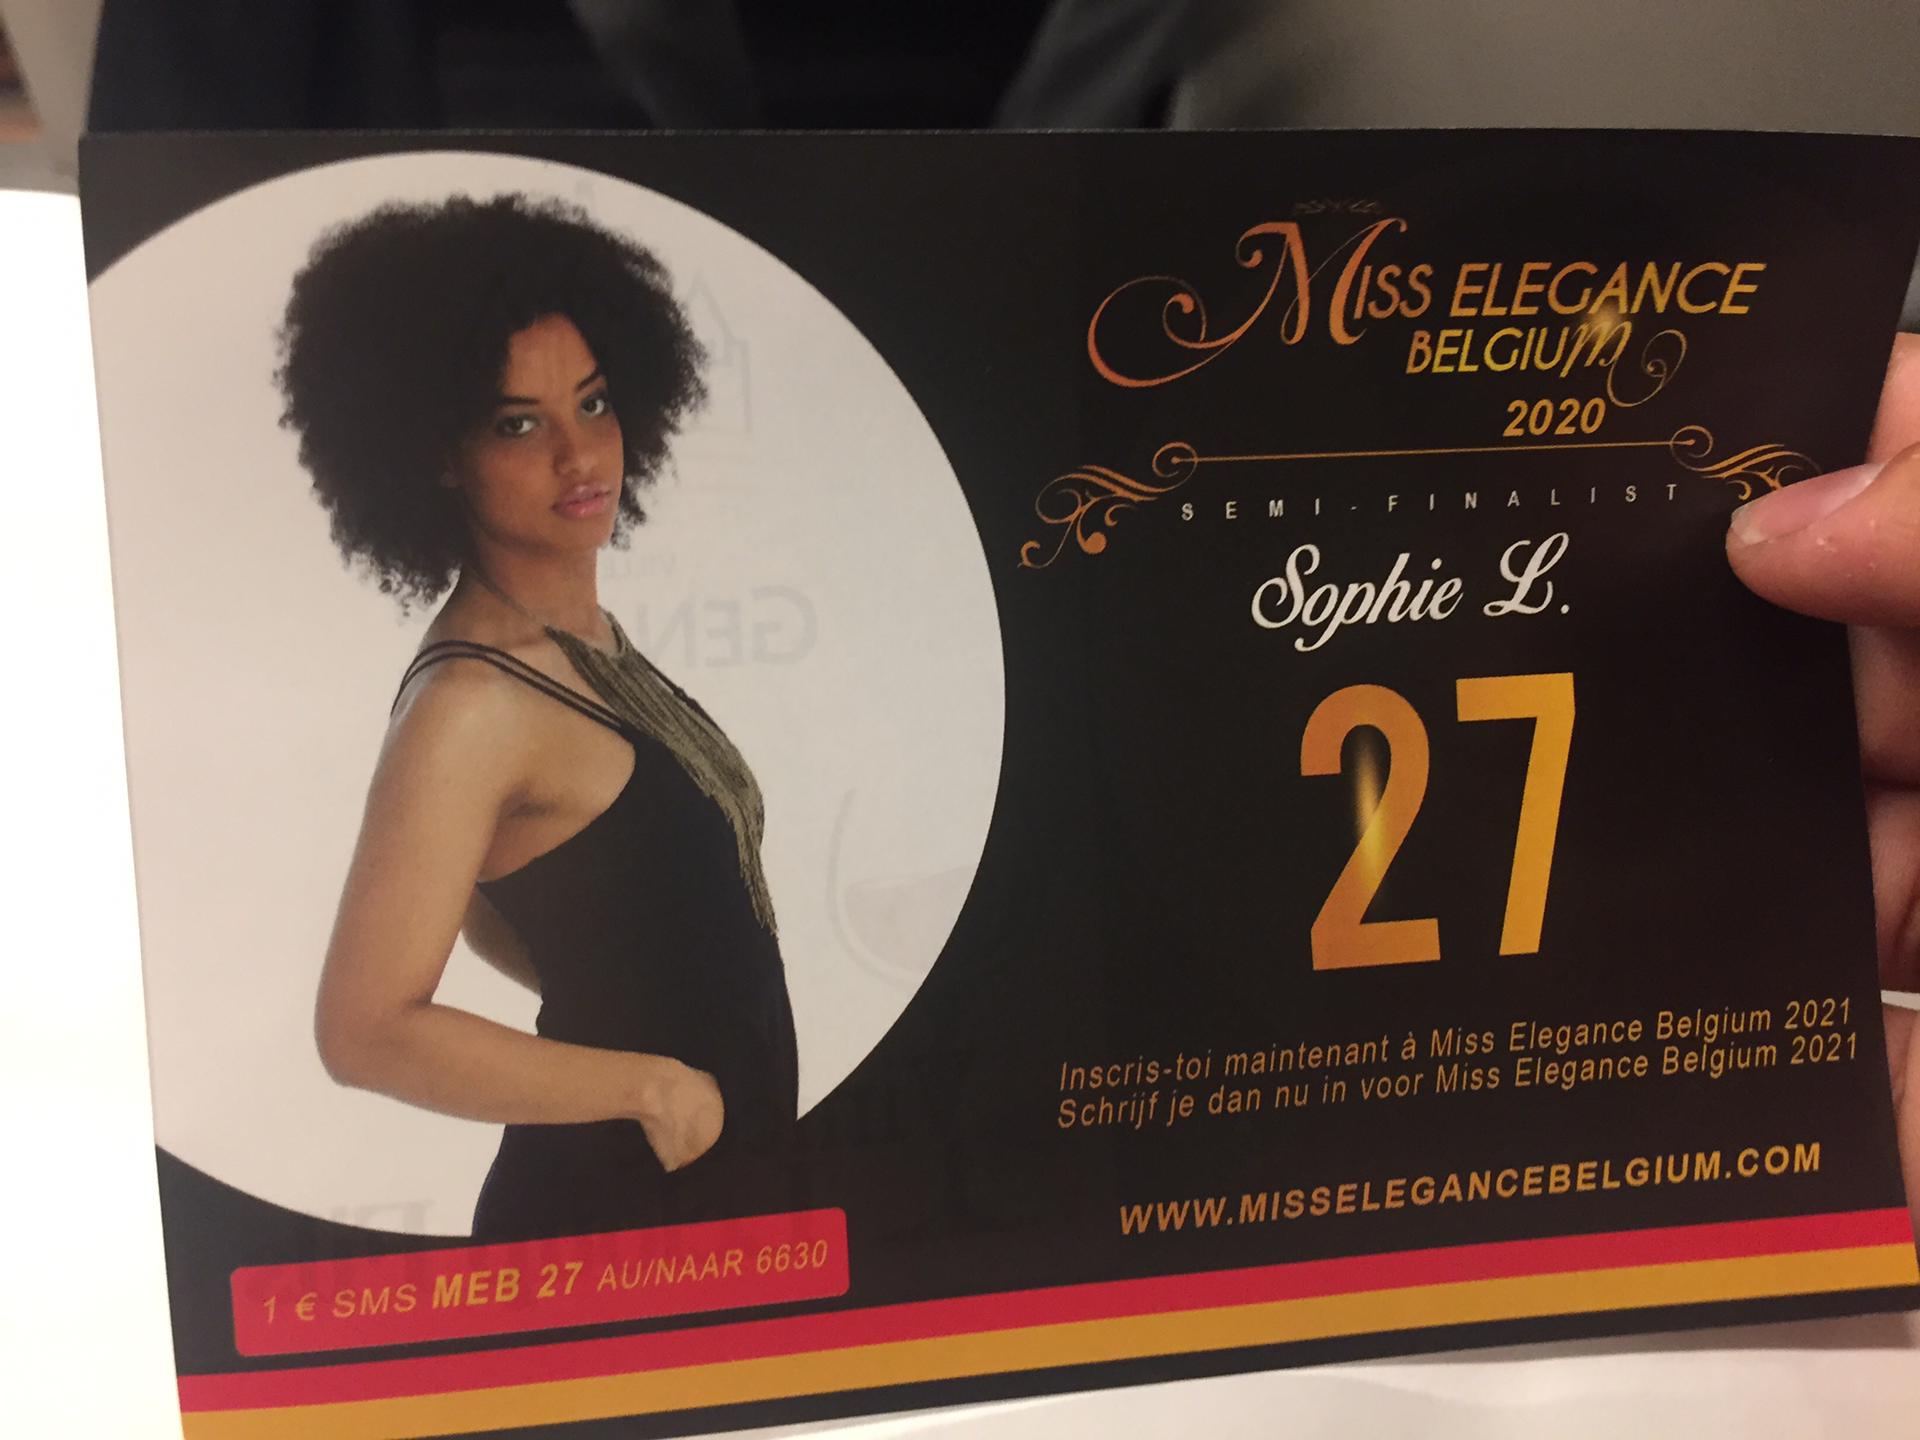 Burundi / Diaspora : Une Belgo-Burundaise numéro 27 au Miss Elegance Belgium 2020 . Votez 27 !